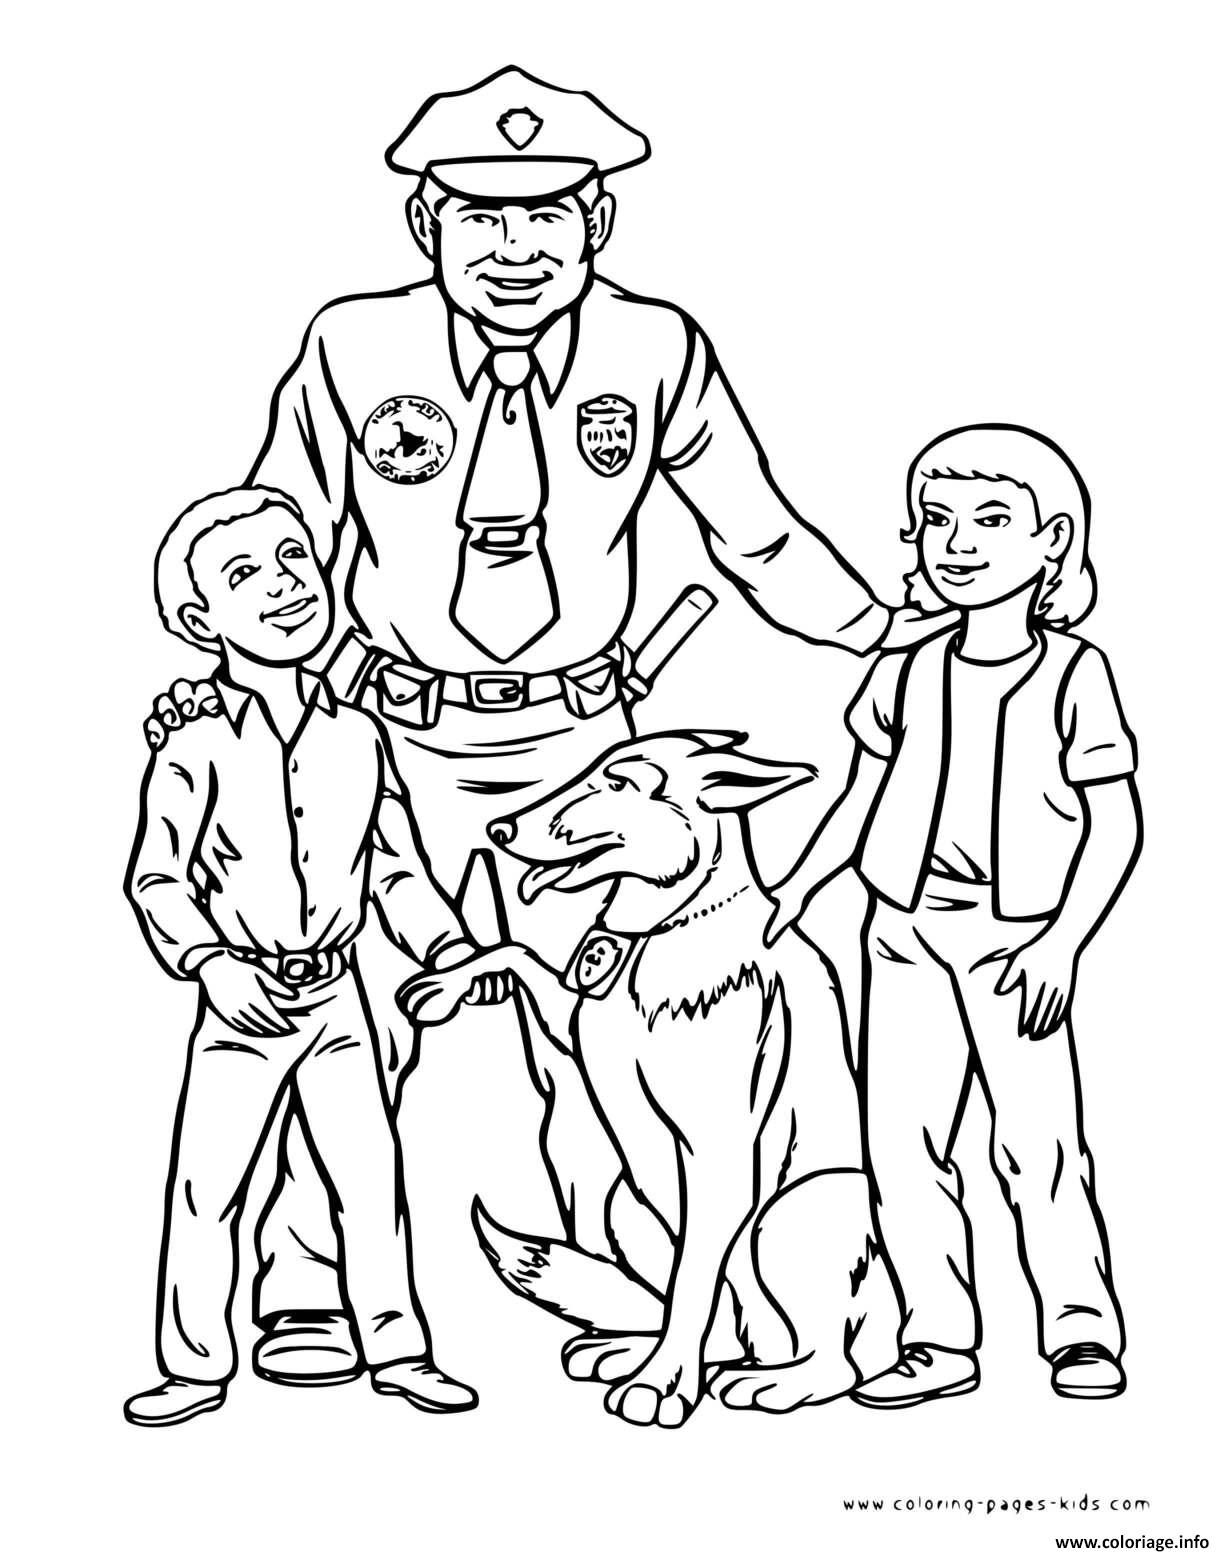 Dessin chien policier et officier avec deux enfants Coloriage Gratuit à Imprimer